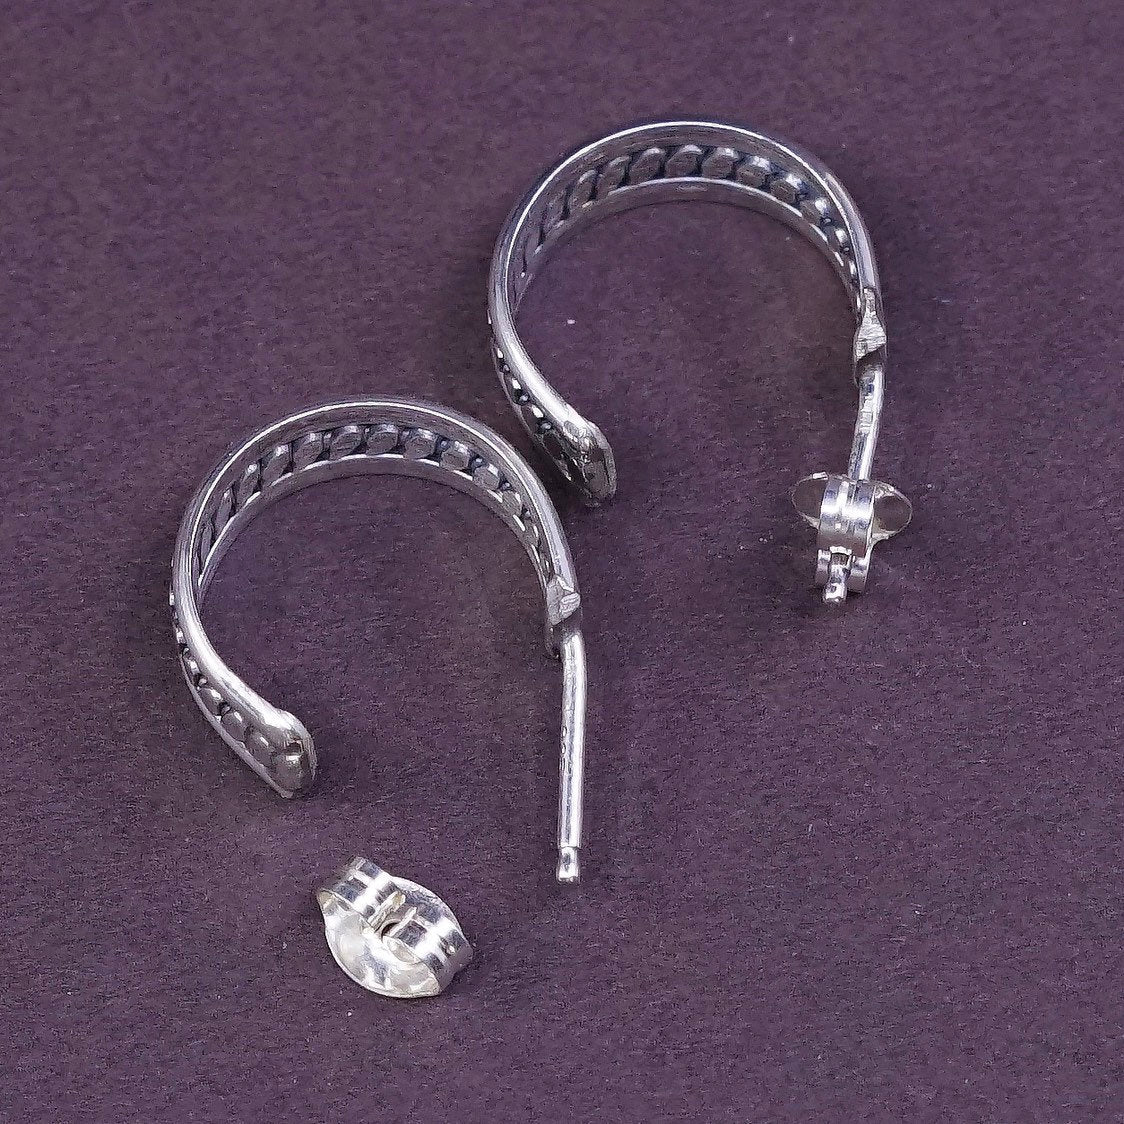 0.5", vintage Sterling silver handmade earrings, 925 silver textured hoops